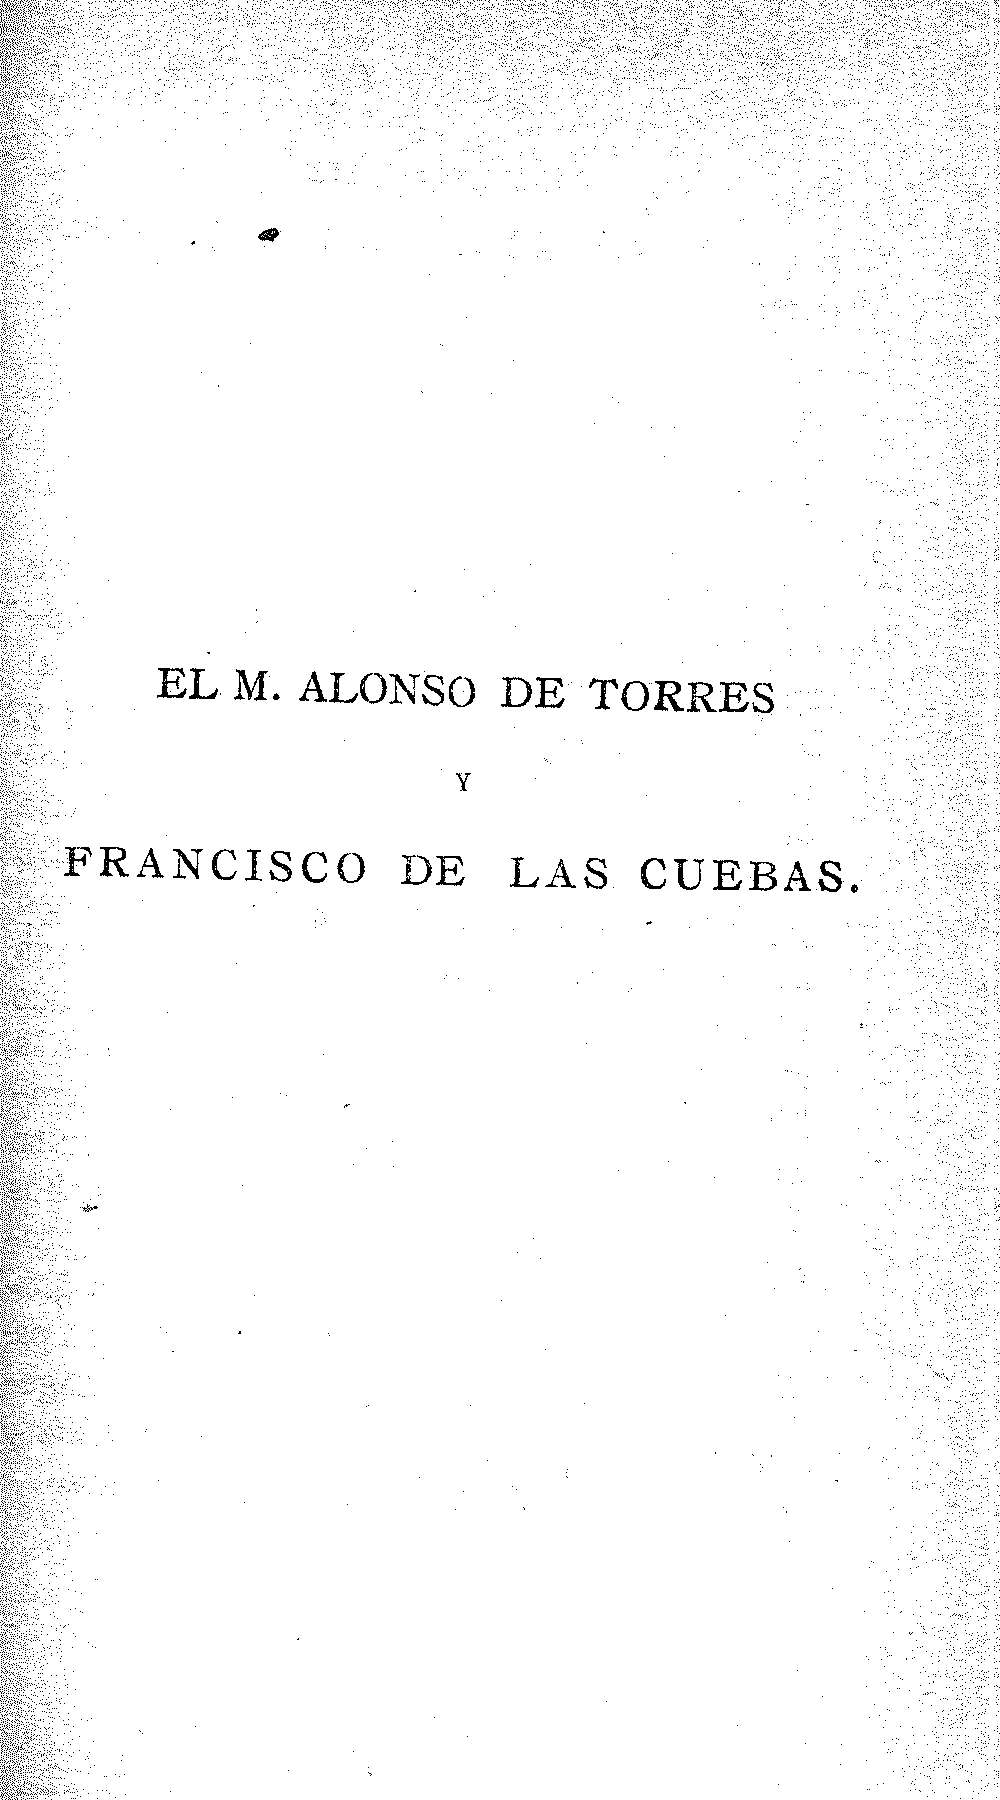 El M. Alonso de Torres y Francisco de las Cuebas.